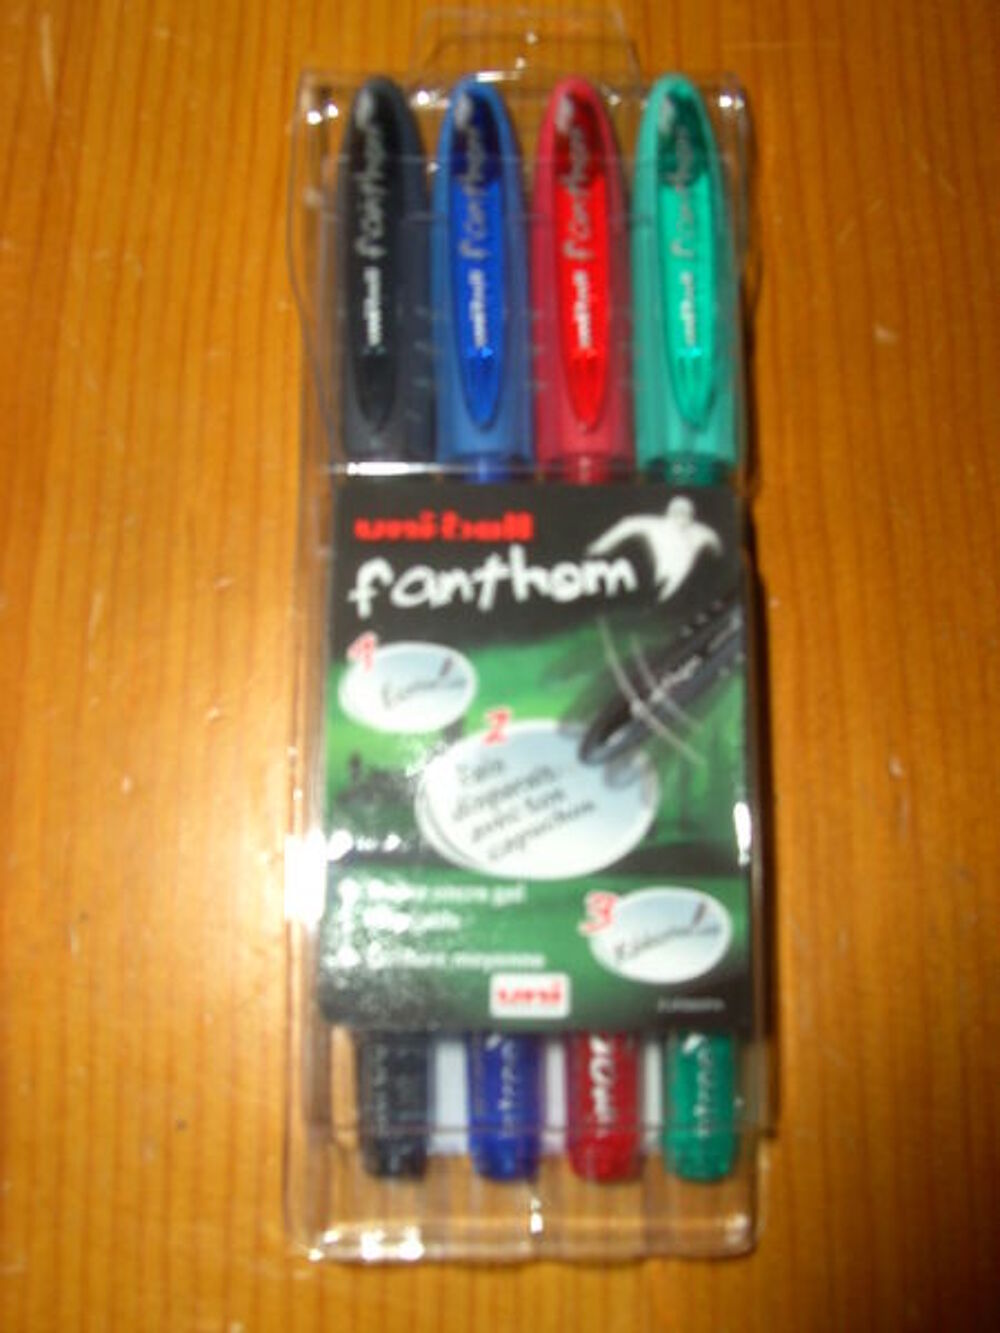 Pochette de 4 stylos Uni-ball Fanthom (Neuve) Puriculture